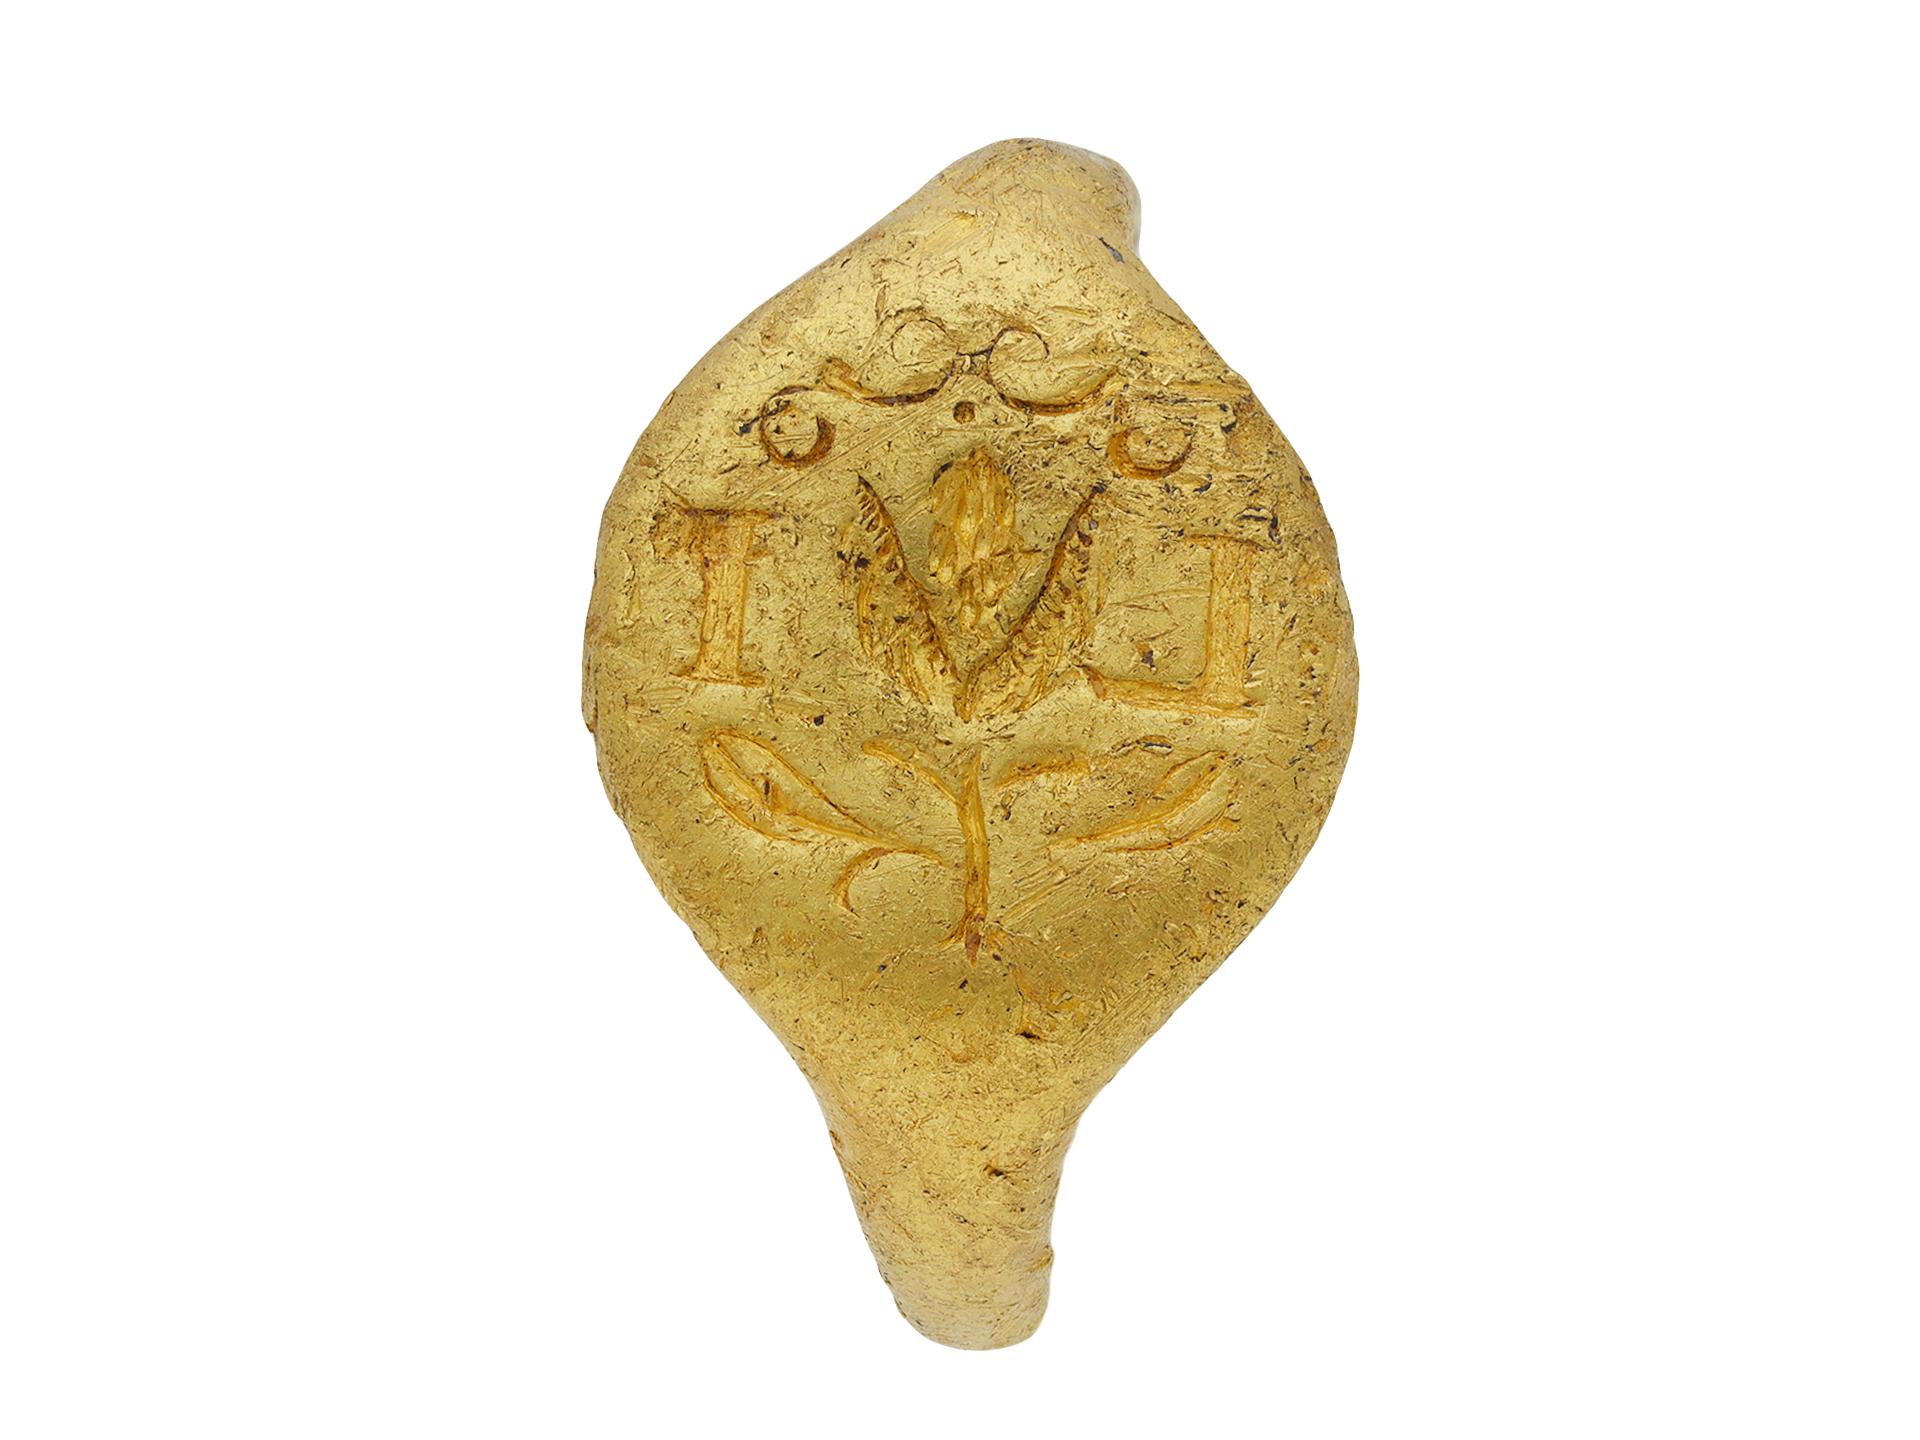 Postmittelalterlicher Siegelring. Sie besteht aus einer ovalen Plakette mit dem fein gravierten Bild einer Distel mit Stängel und Blättern, den rückseitig eingravierten Initialen 